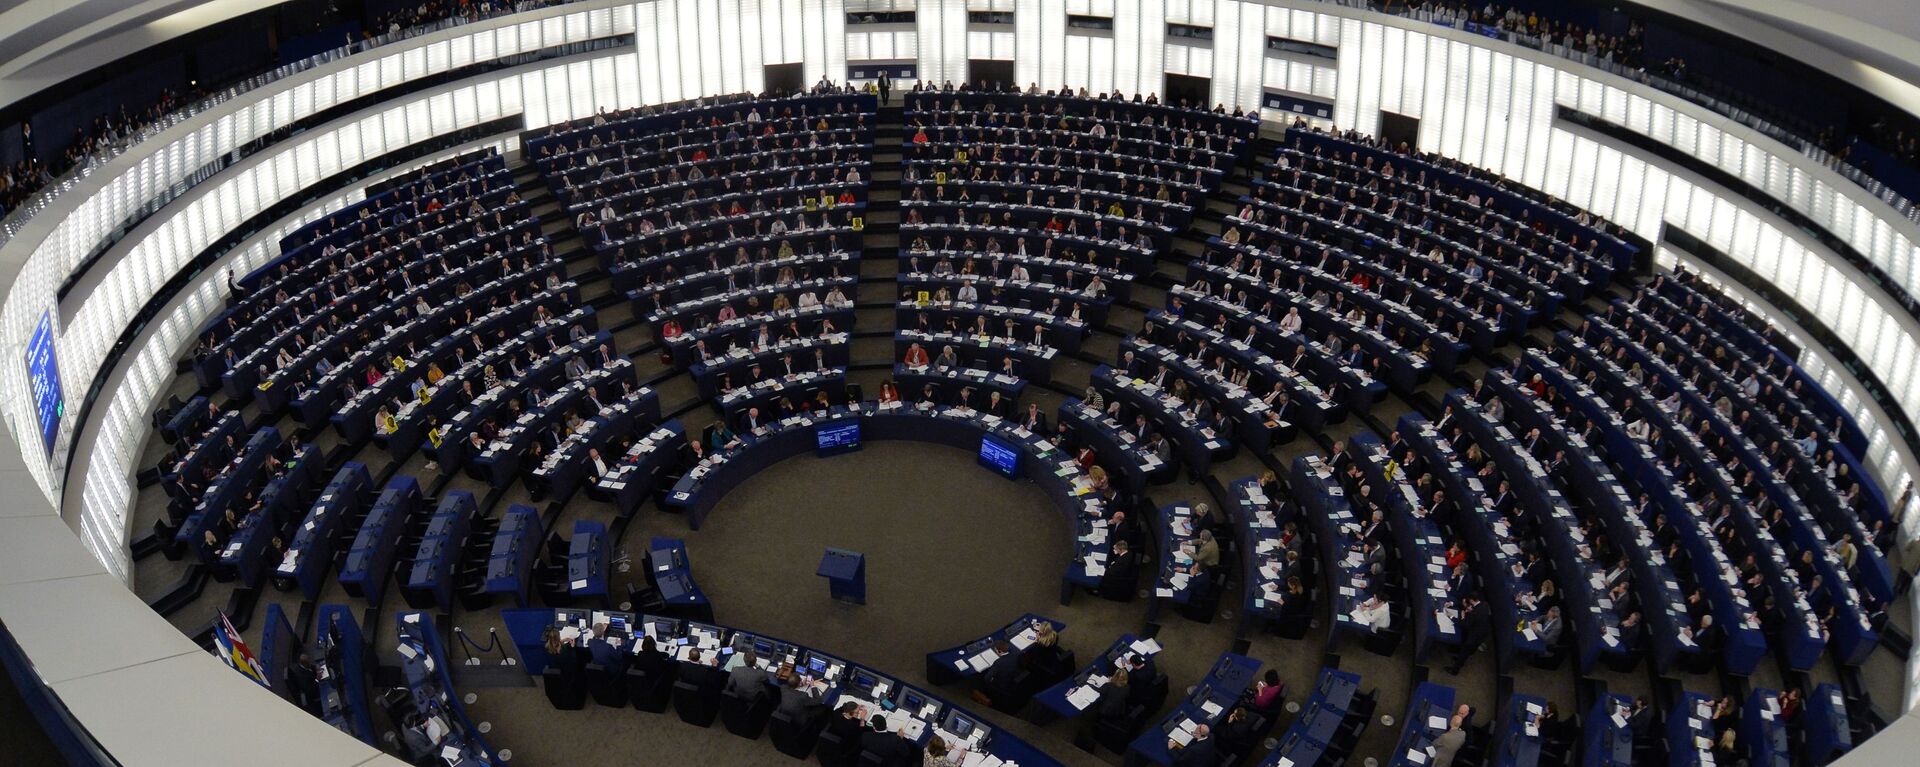 Заседање Европског парламента у Стразбуру - Sputnik Србија, 1920, 10.06.2021